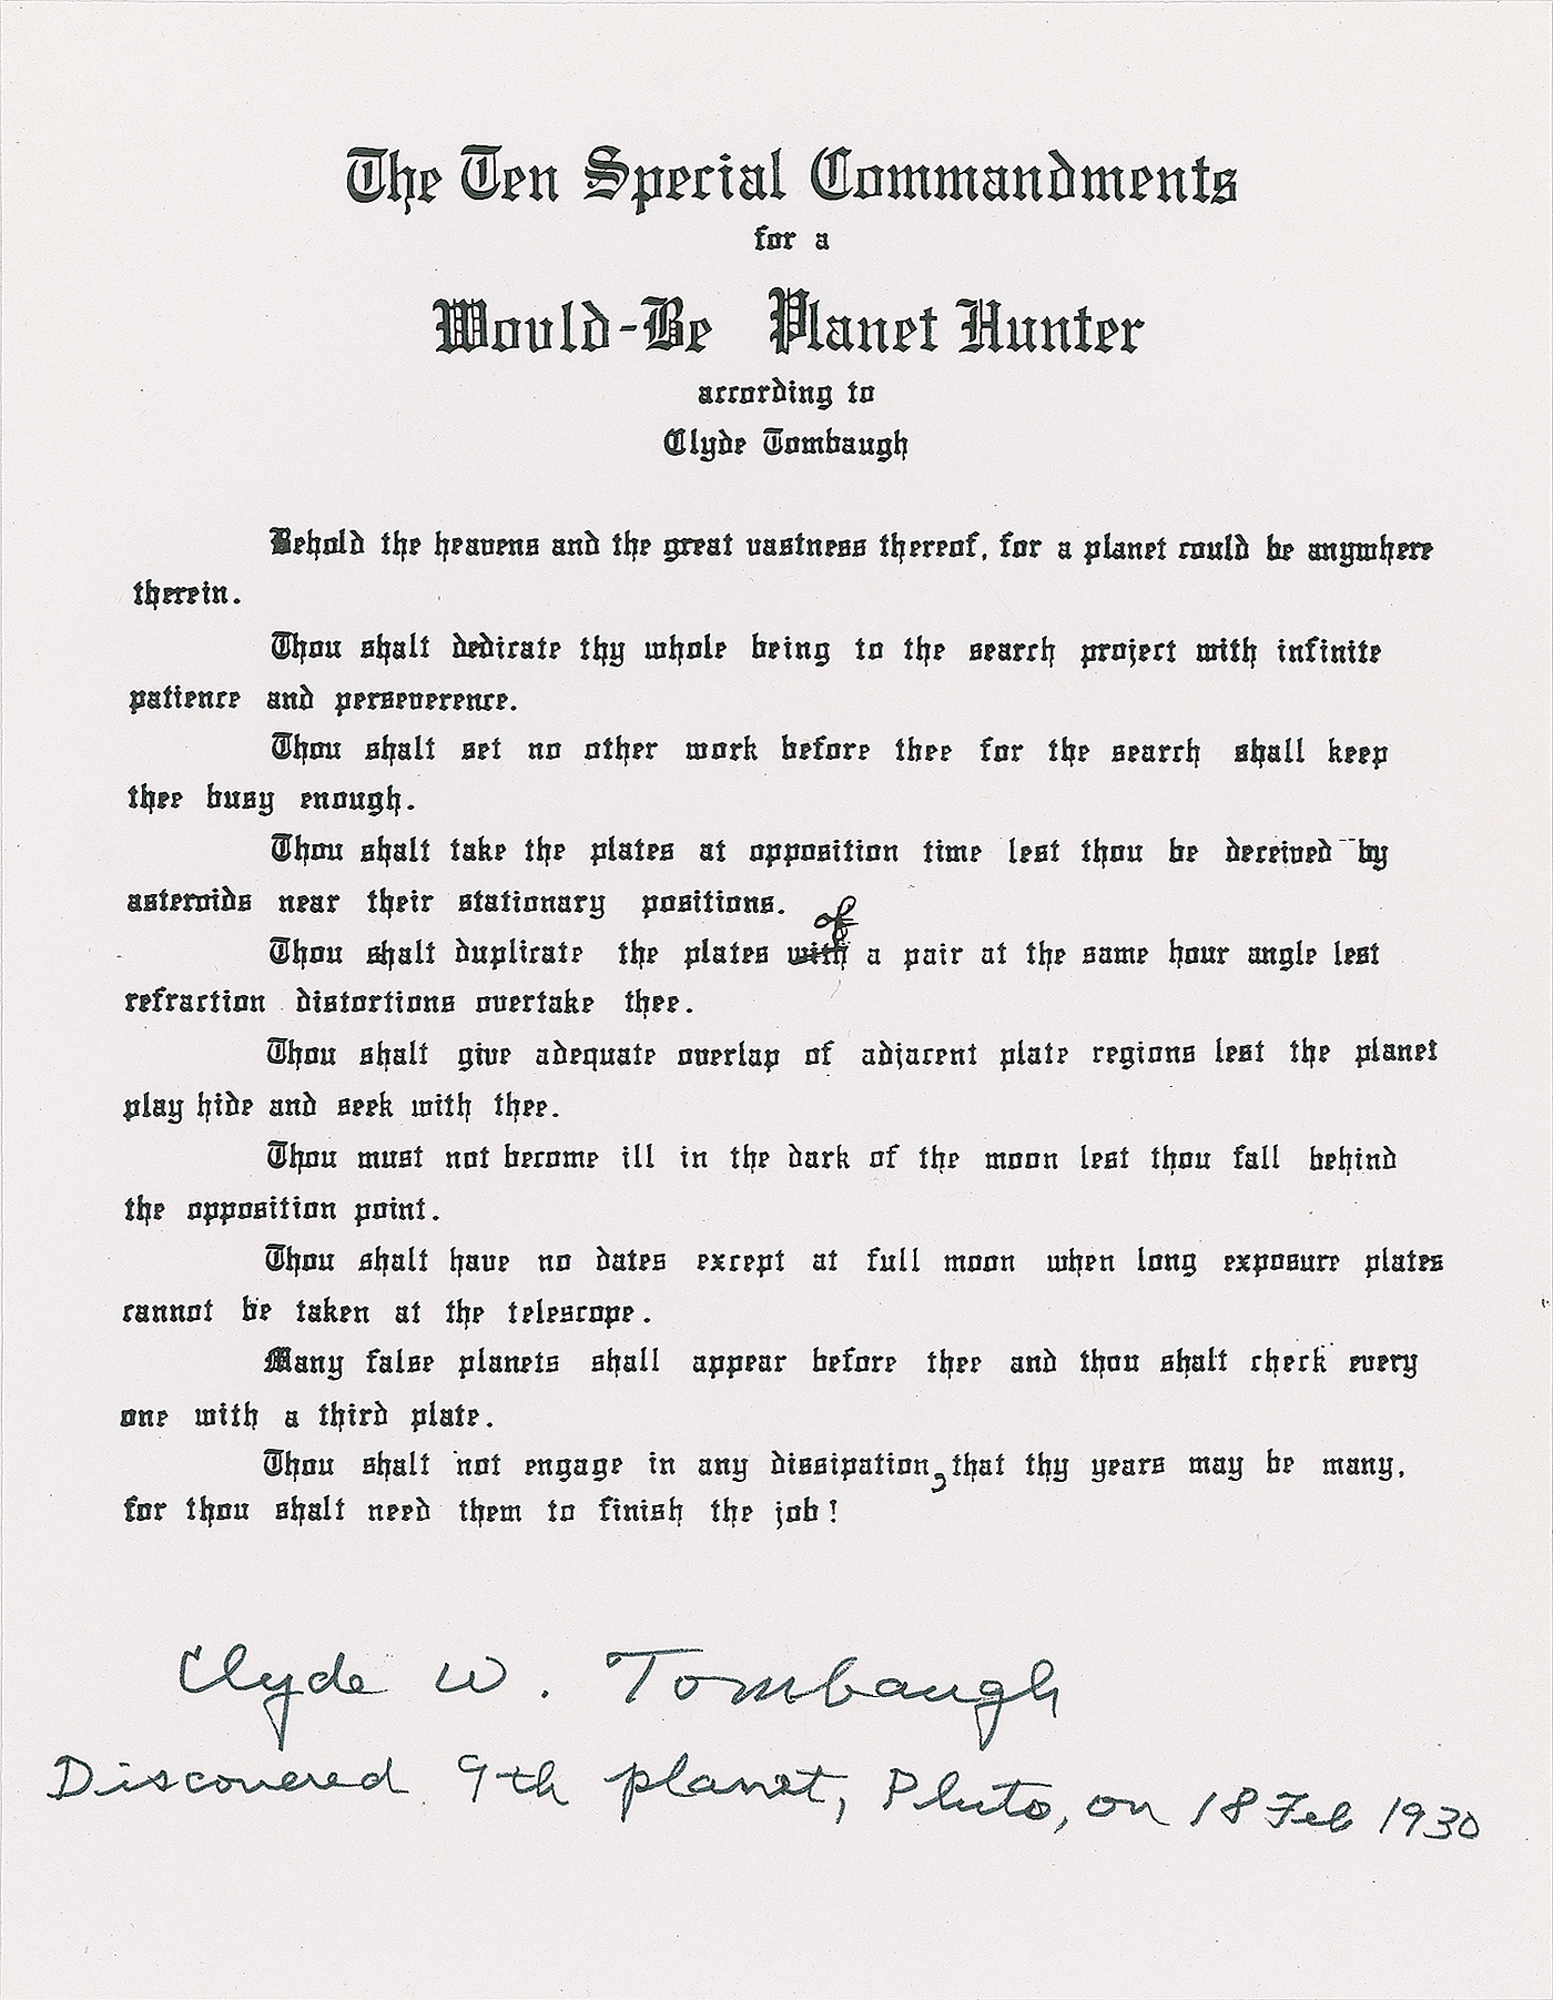 Lot #468 Clyde W. Tombaugh Signed Souvenir